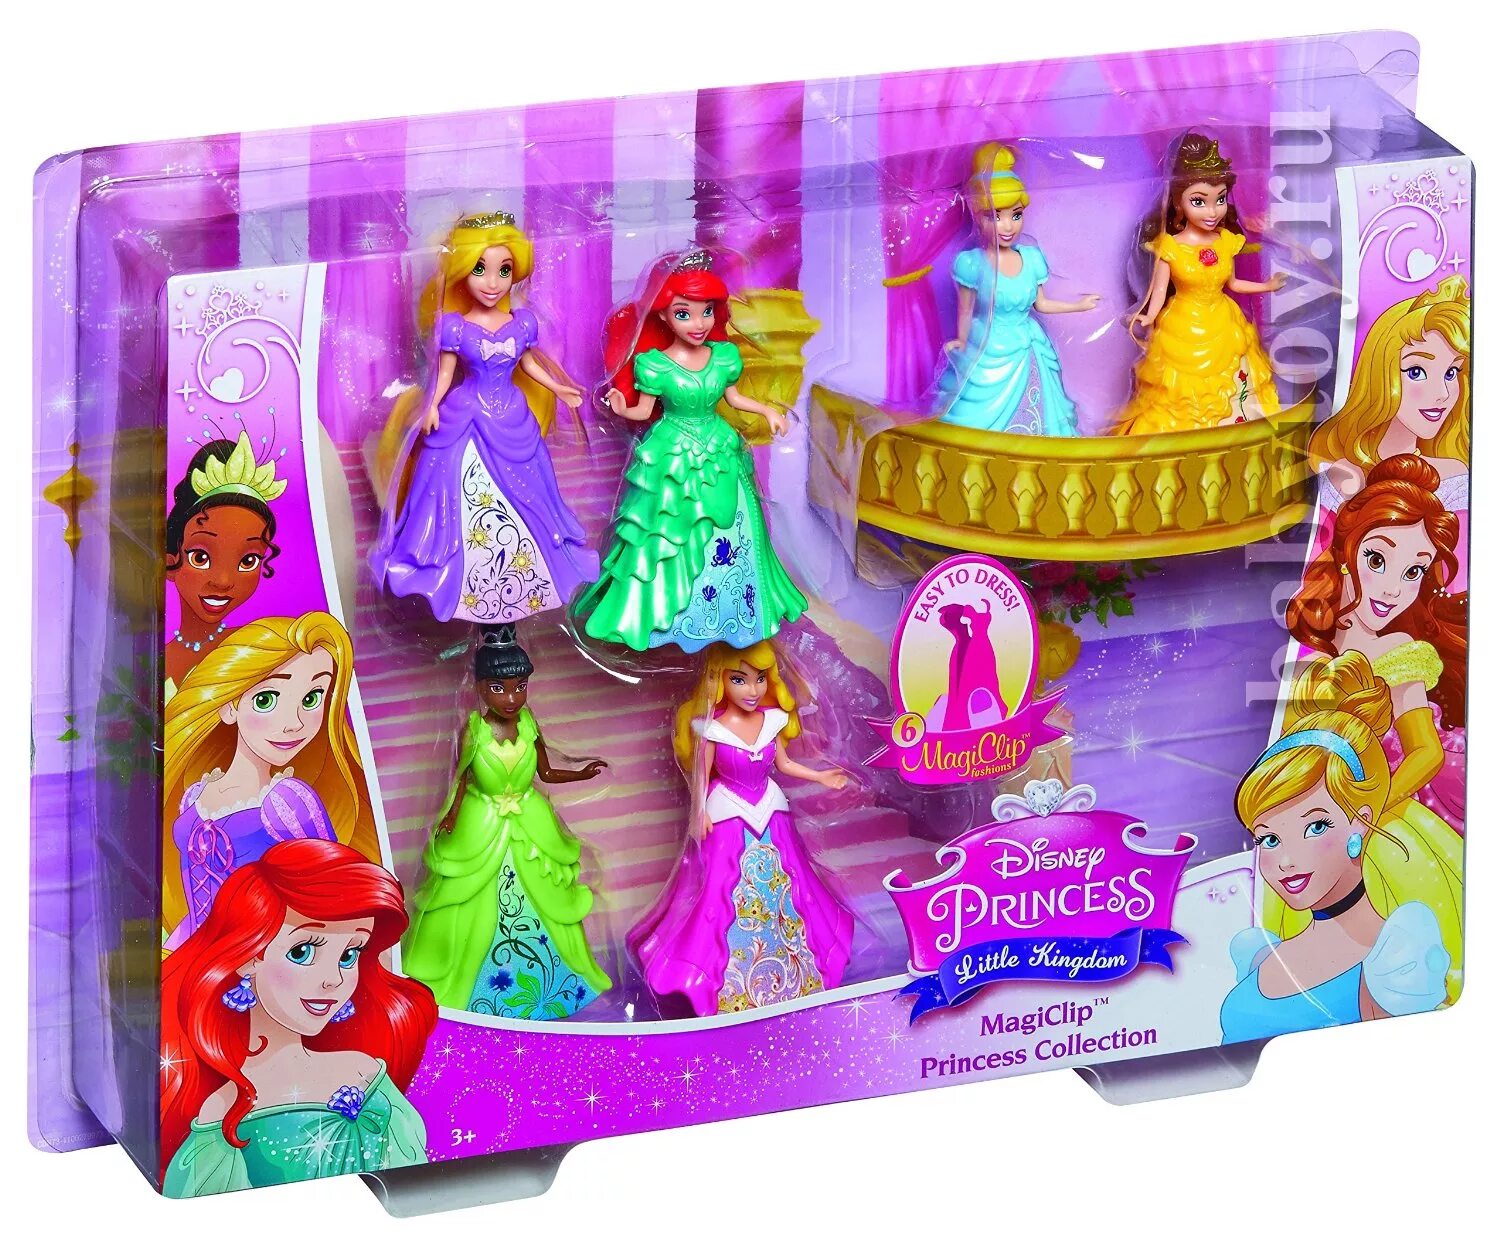 Купить принцесс дисней. Mattel принцессы Disney Magiclip. Мини принцессы Диснея Magiclip. Мини кукла Дисней Magiclip. Мини кукла Дисней Magiclip Рапунцель.